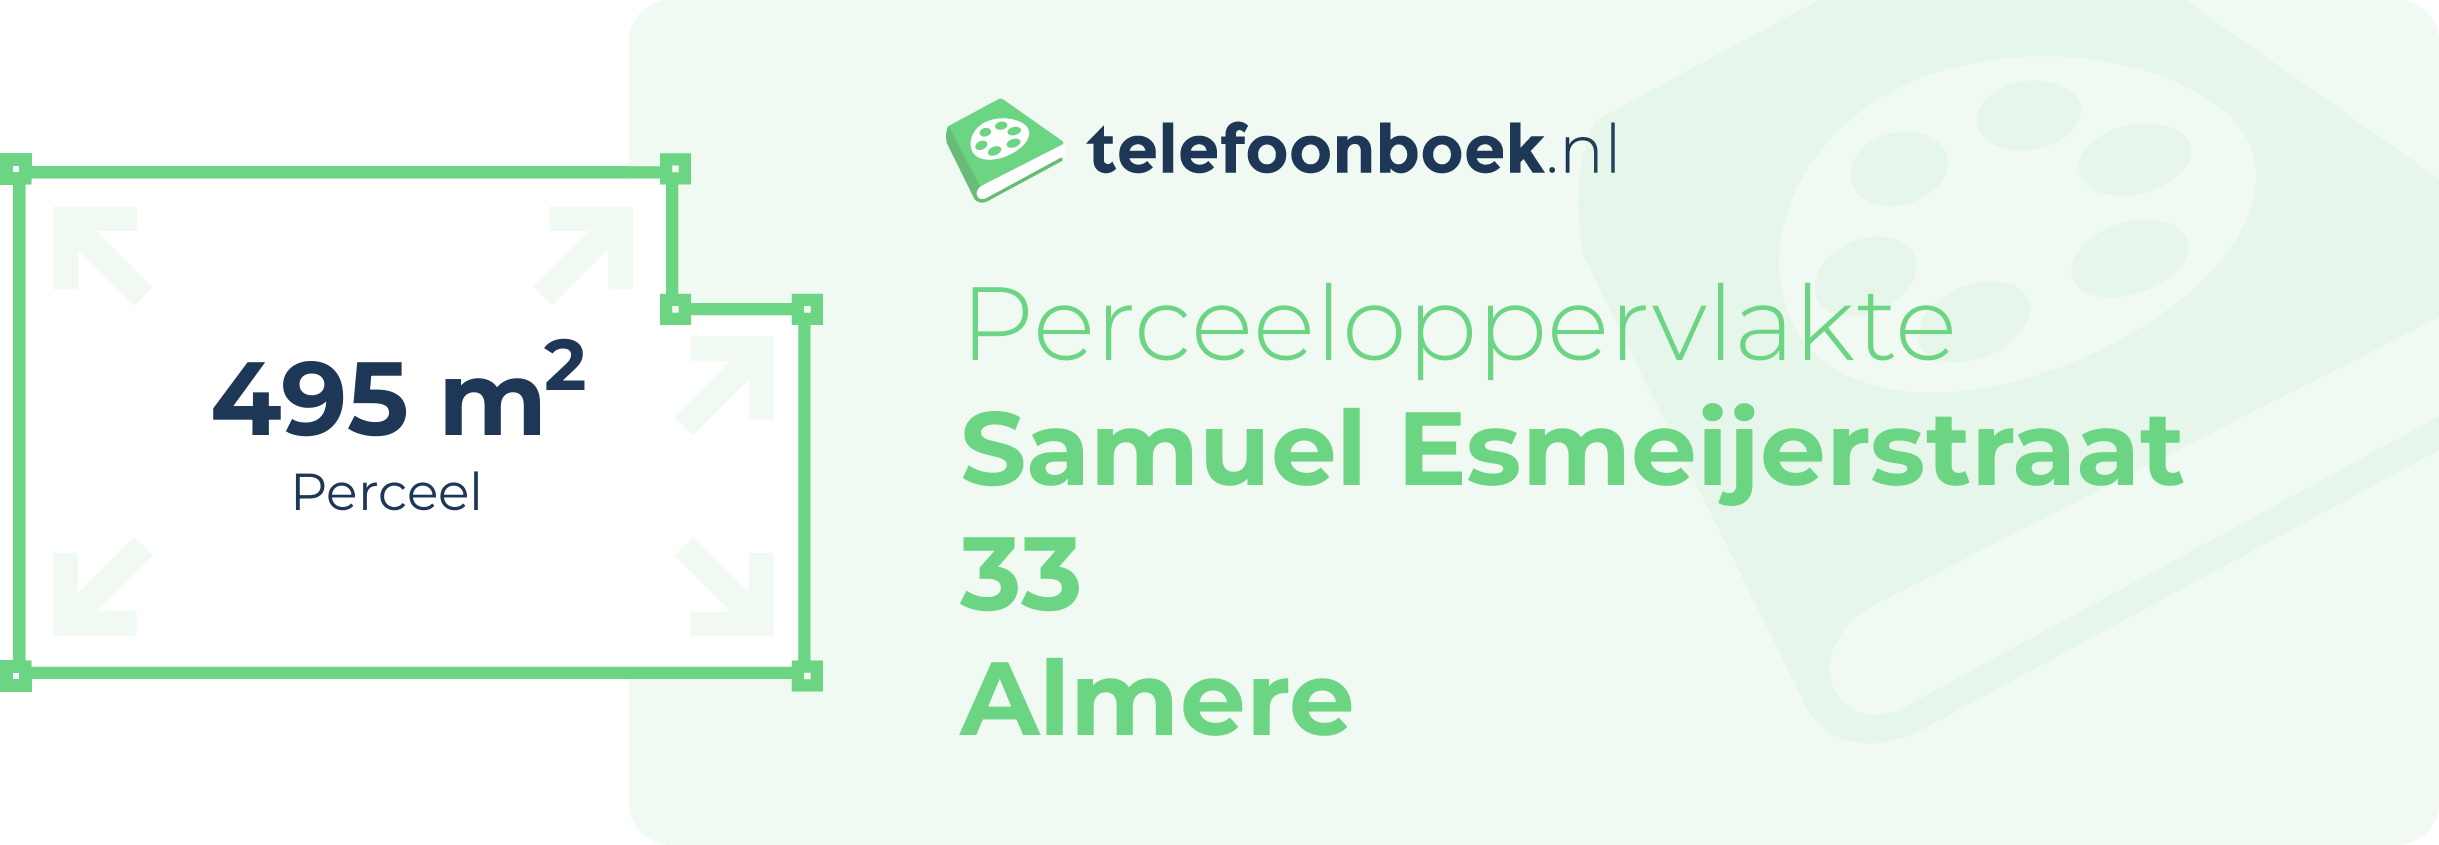 Perceeloppervlakte Samuel Esmeijerstraat 33 Almere